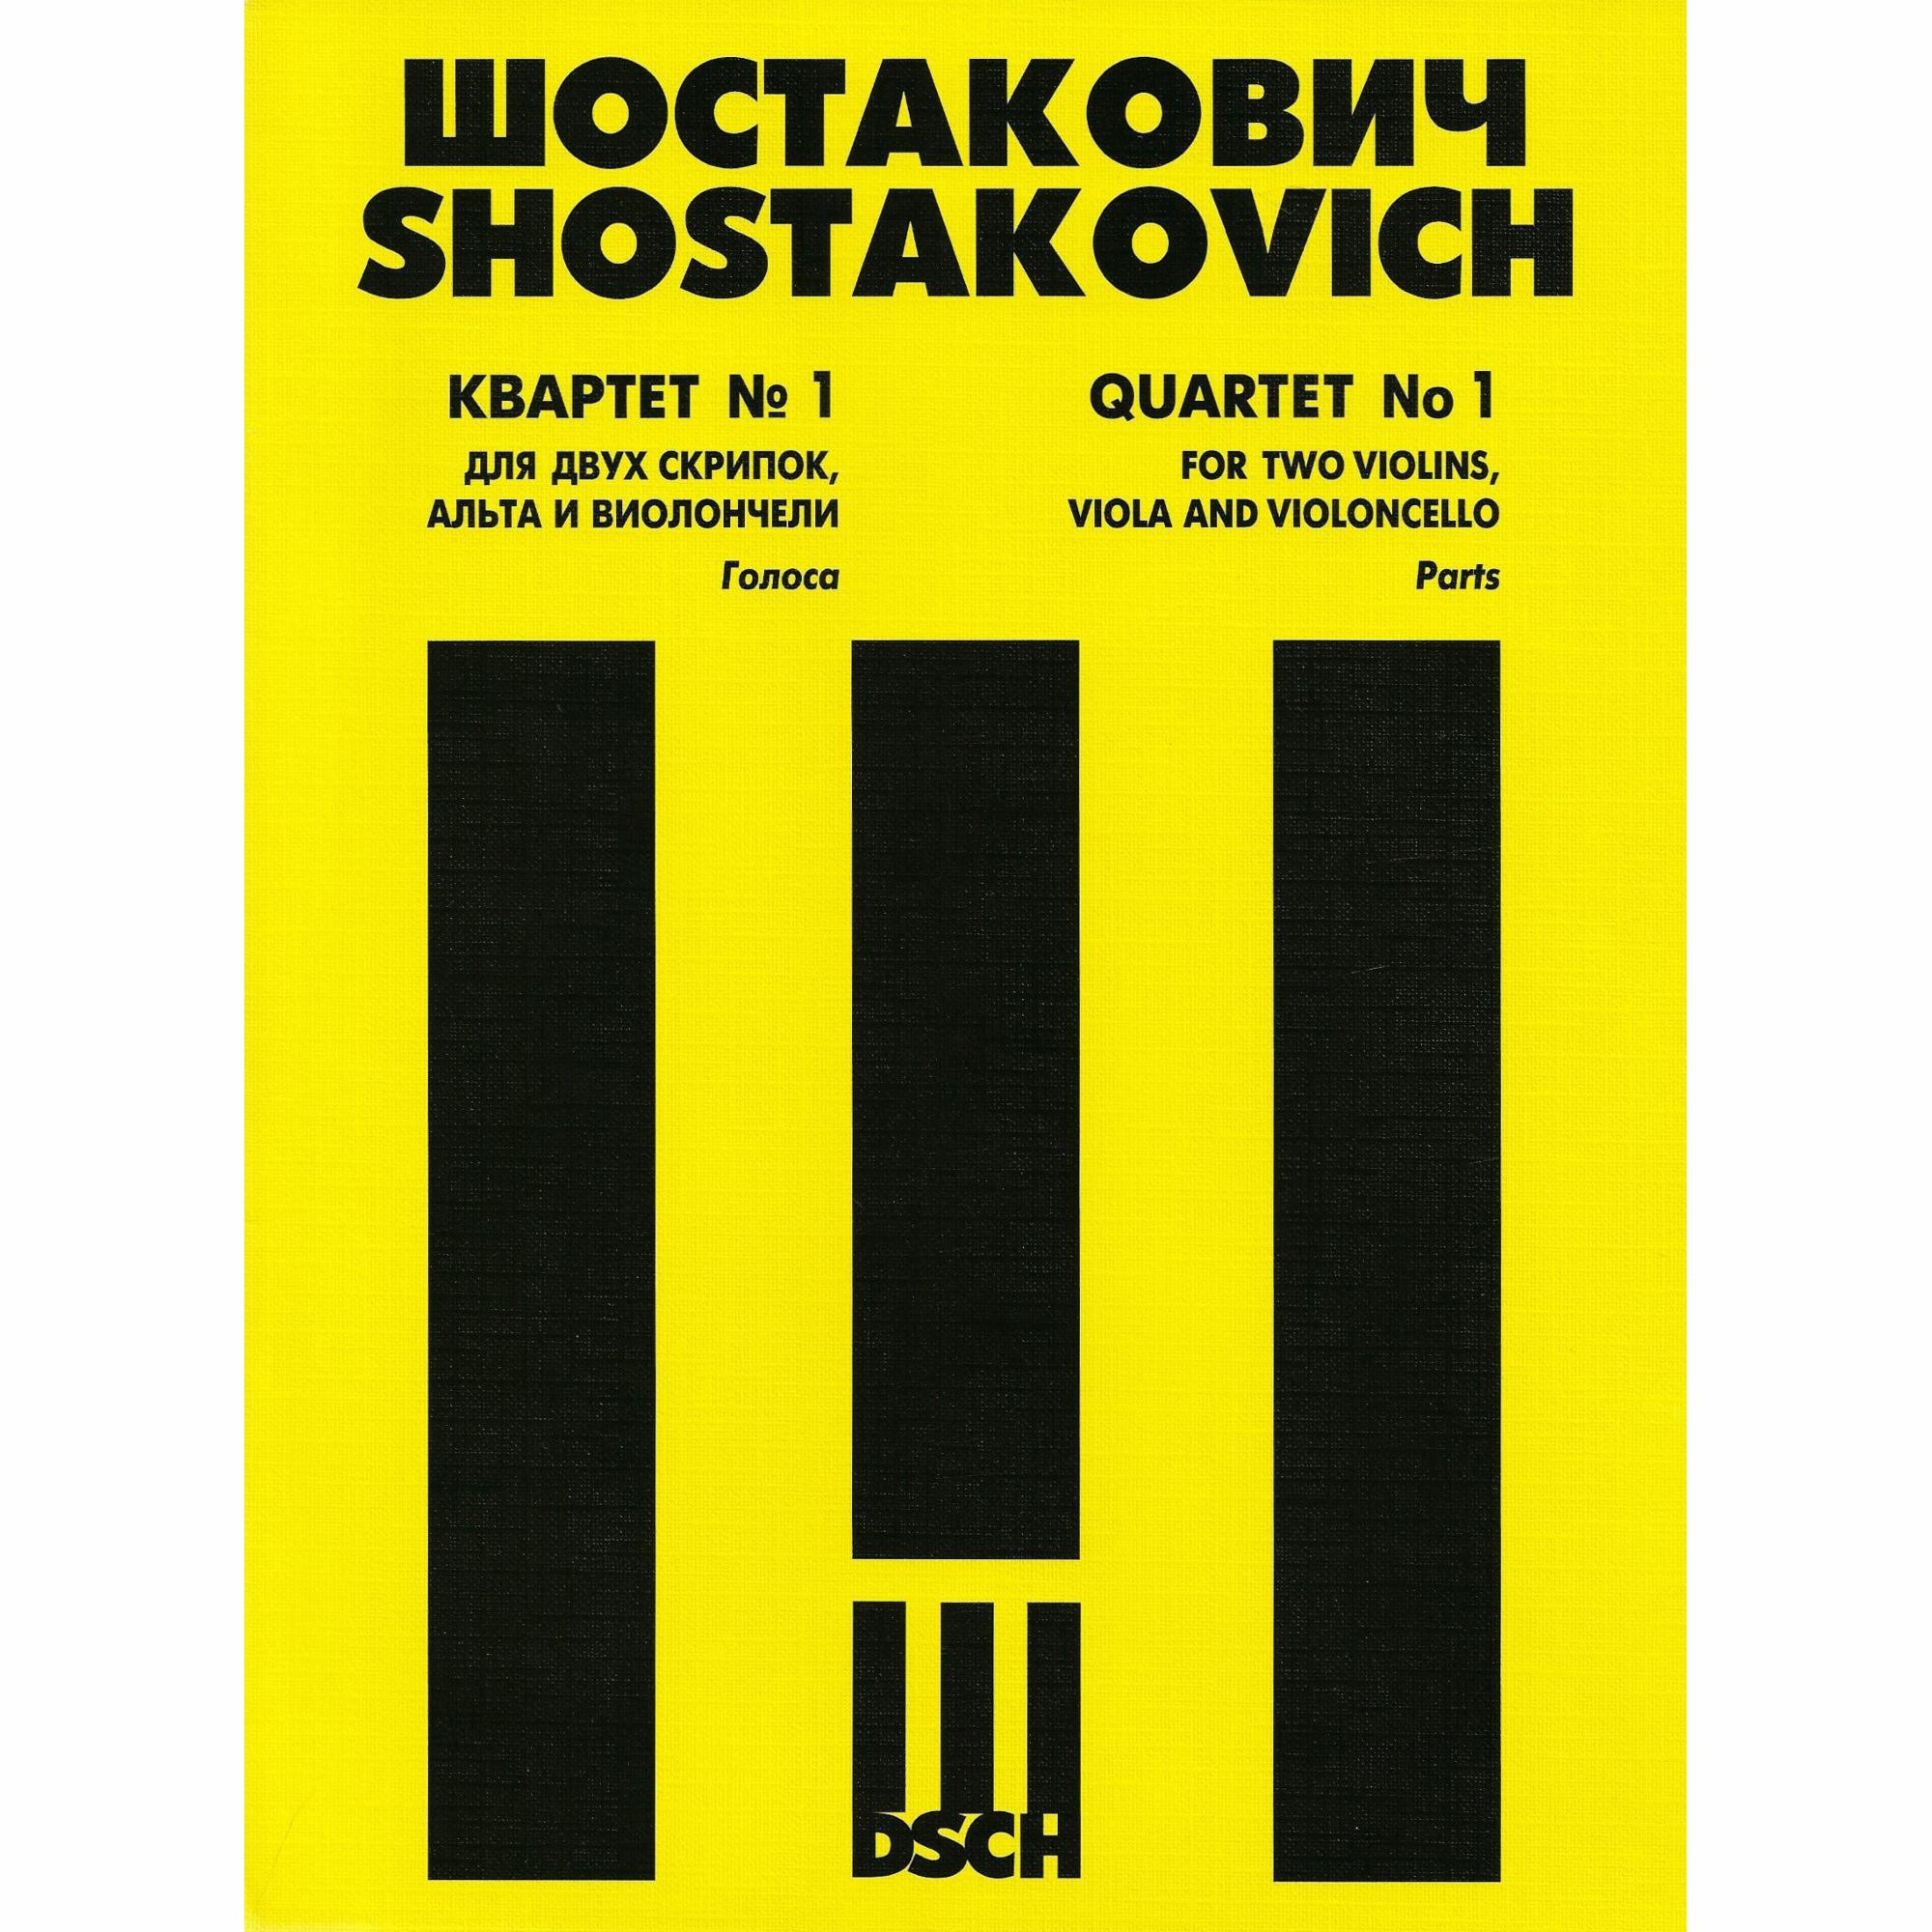 Shostakovich -- String Quartet No. 1